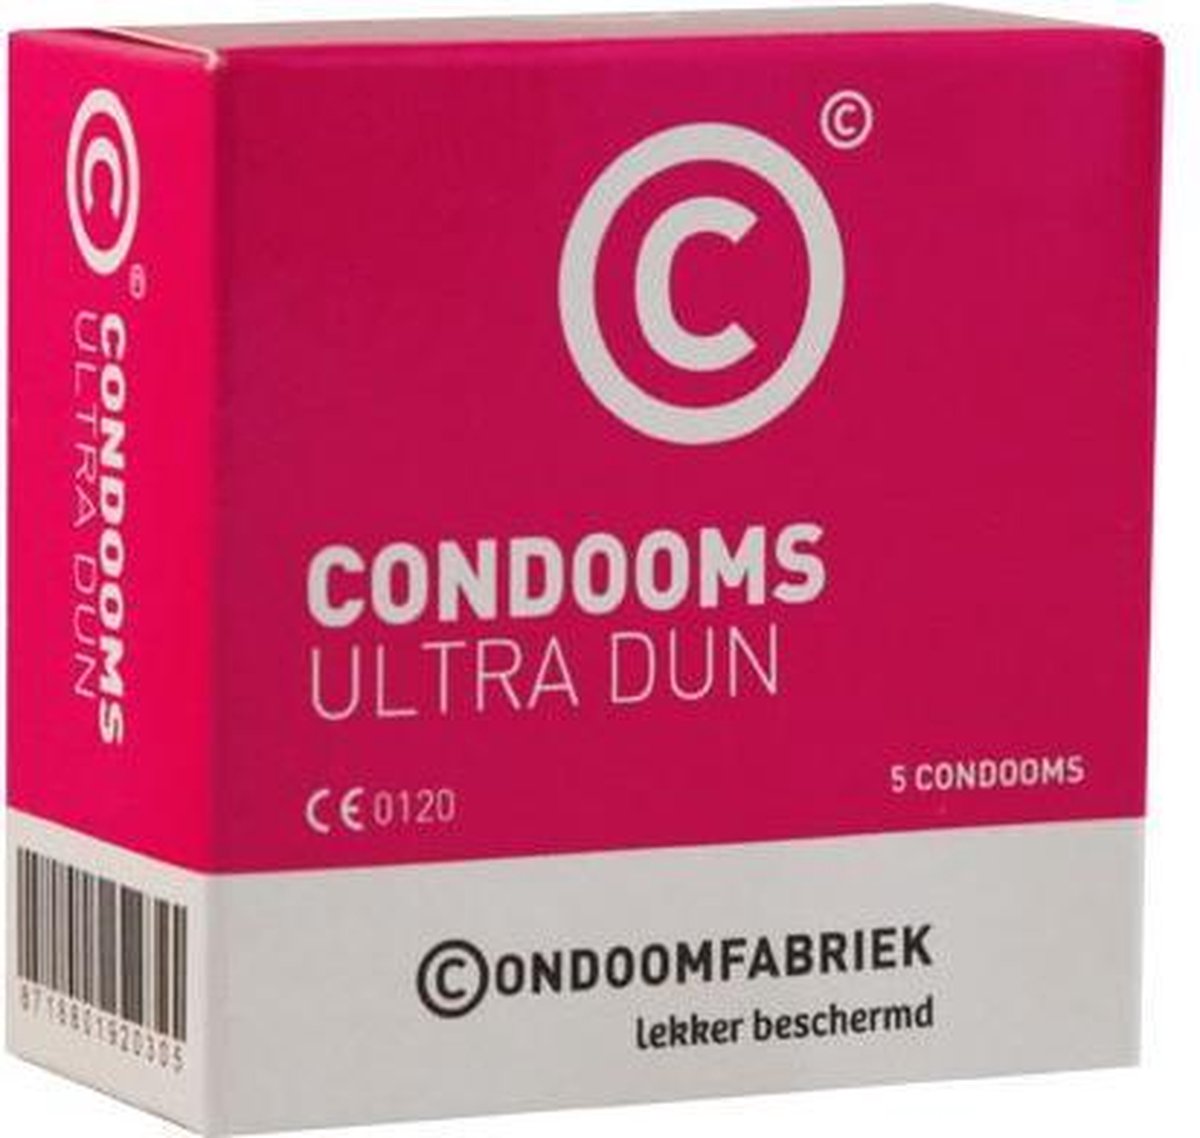 Condoomfabriek - Ultra Dun Feeling Condooms - 5 stuks